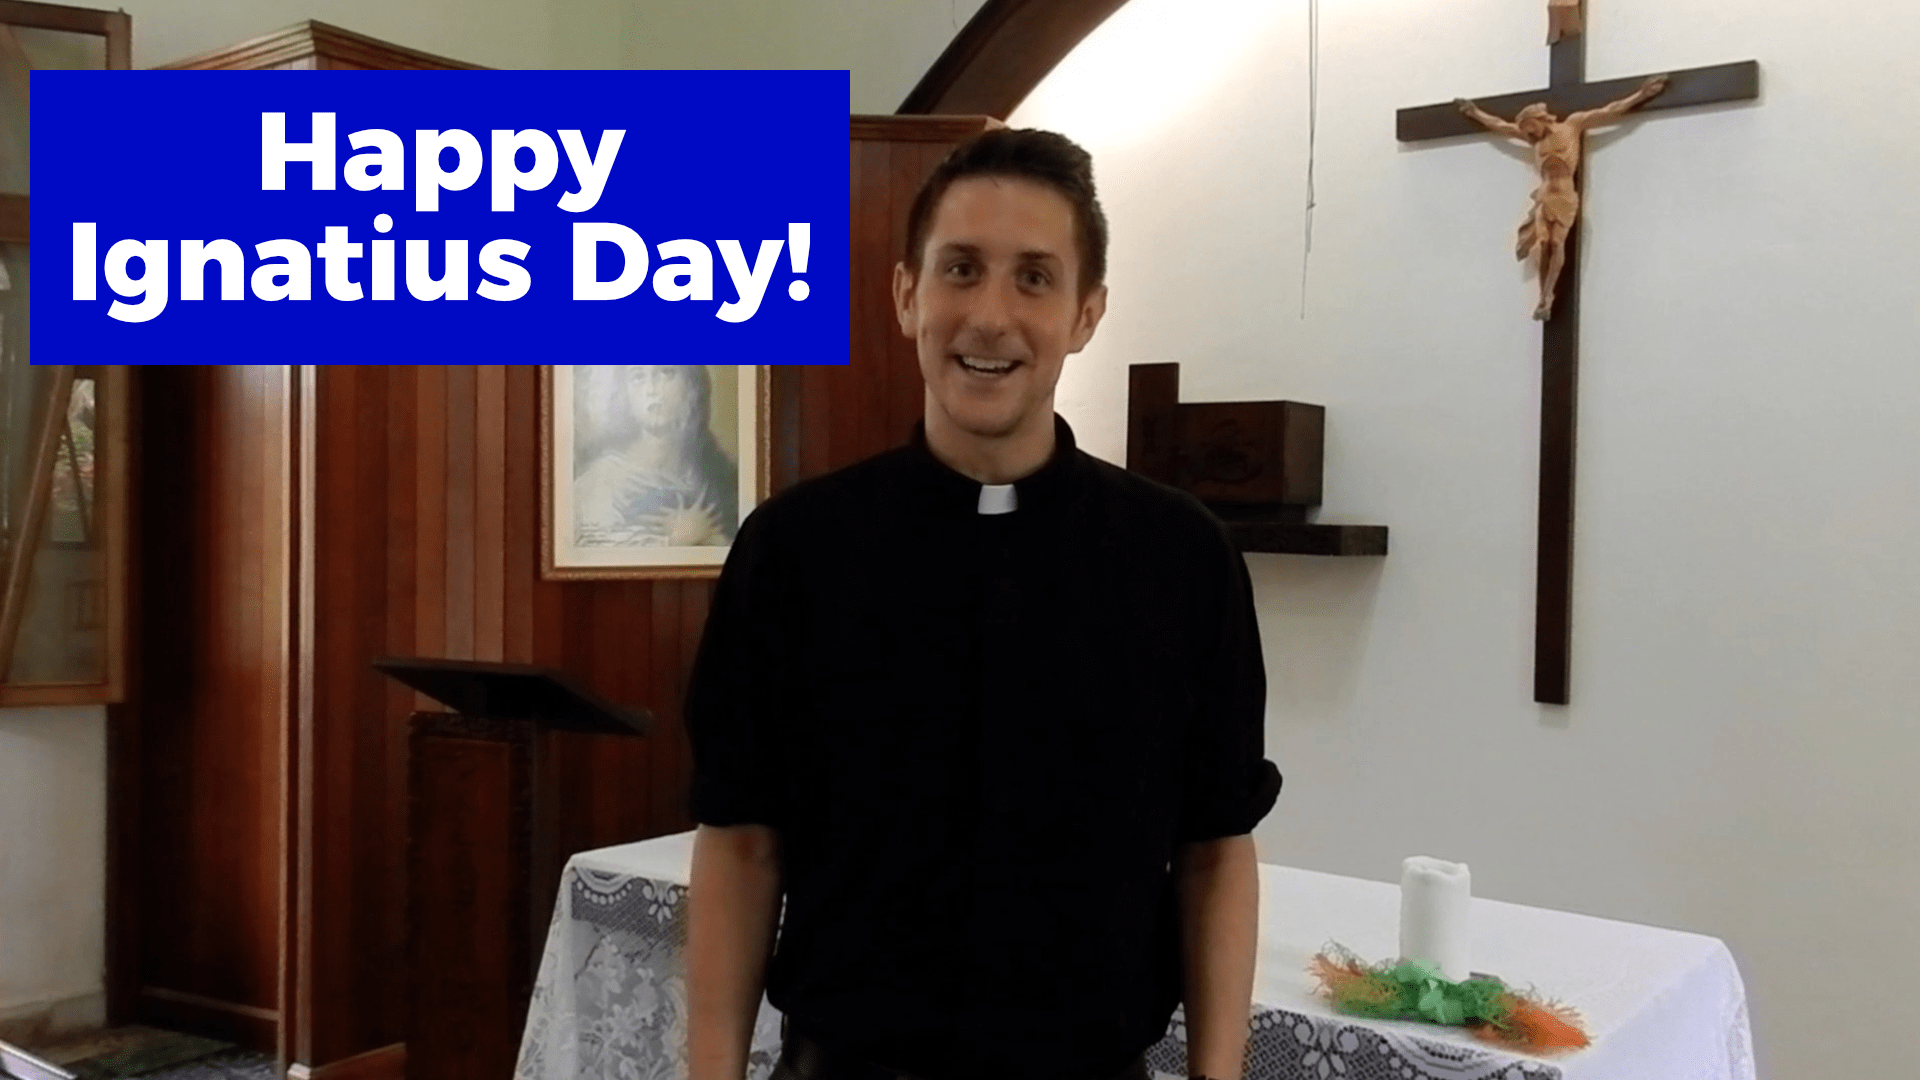 Happy Ignatius Day!